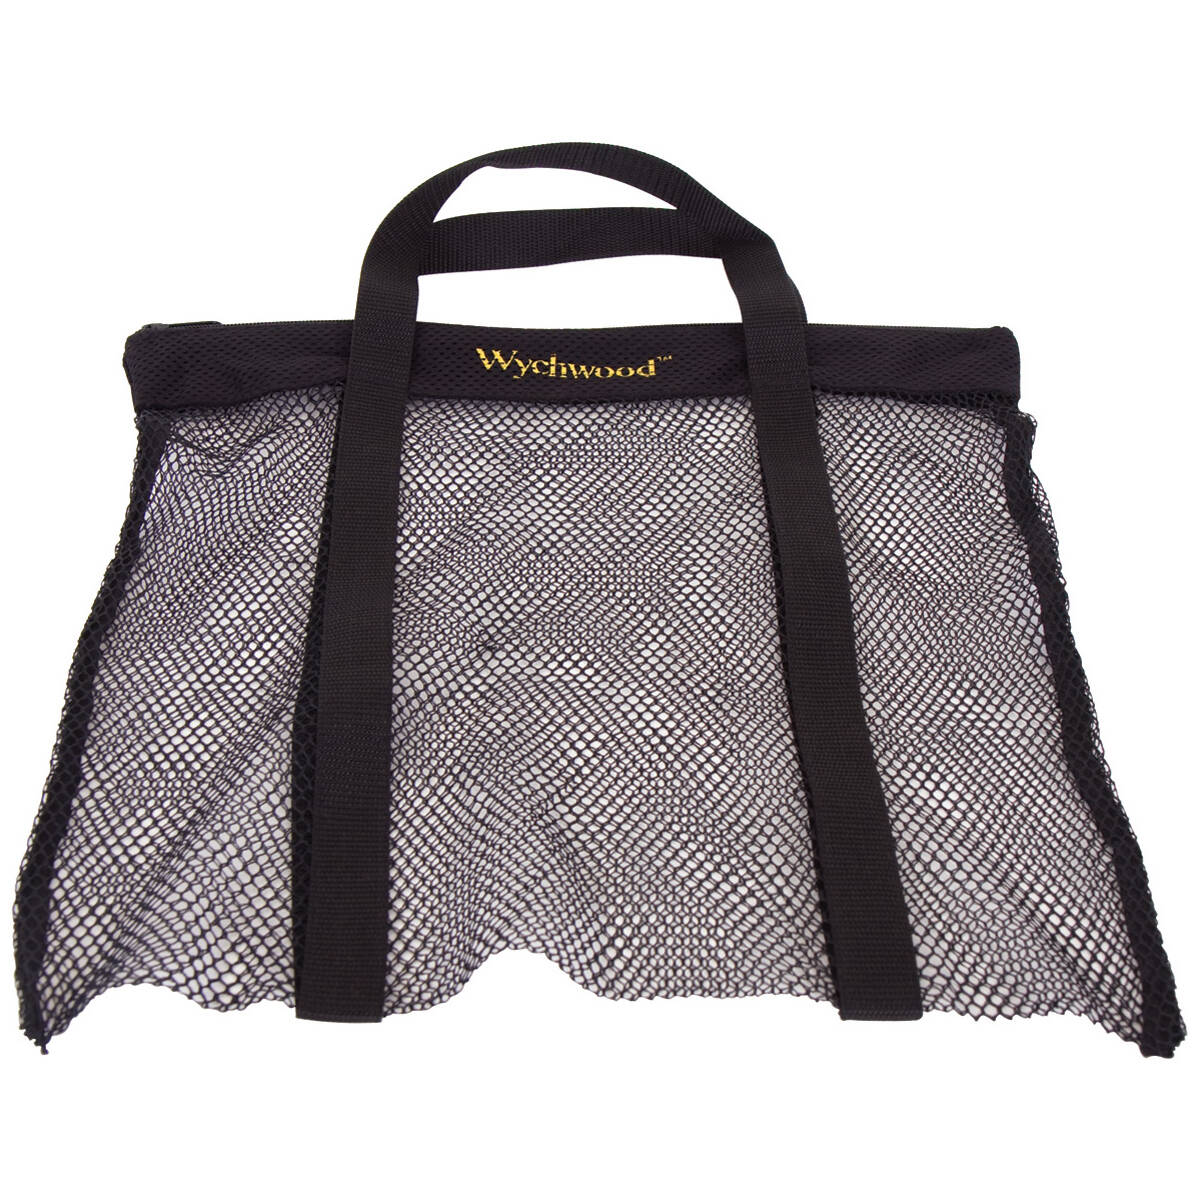 Wychwood Wychwood Airdry Bag Standard